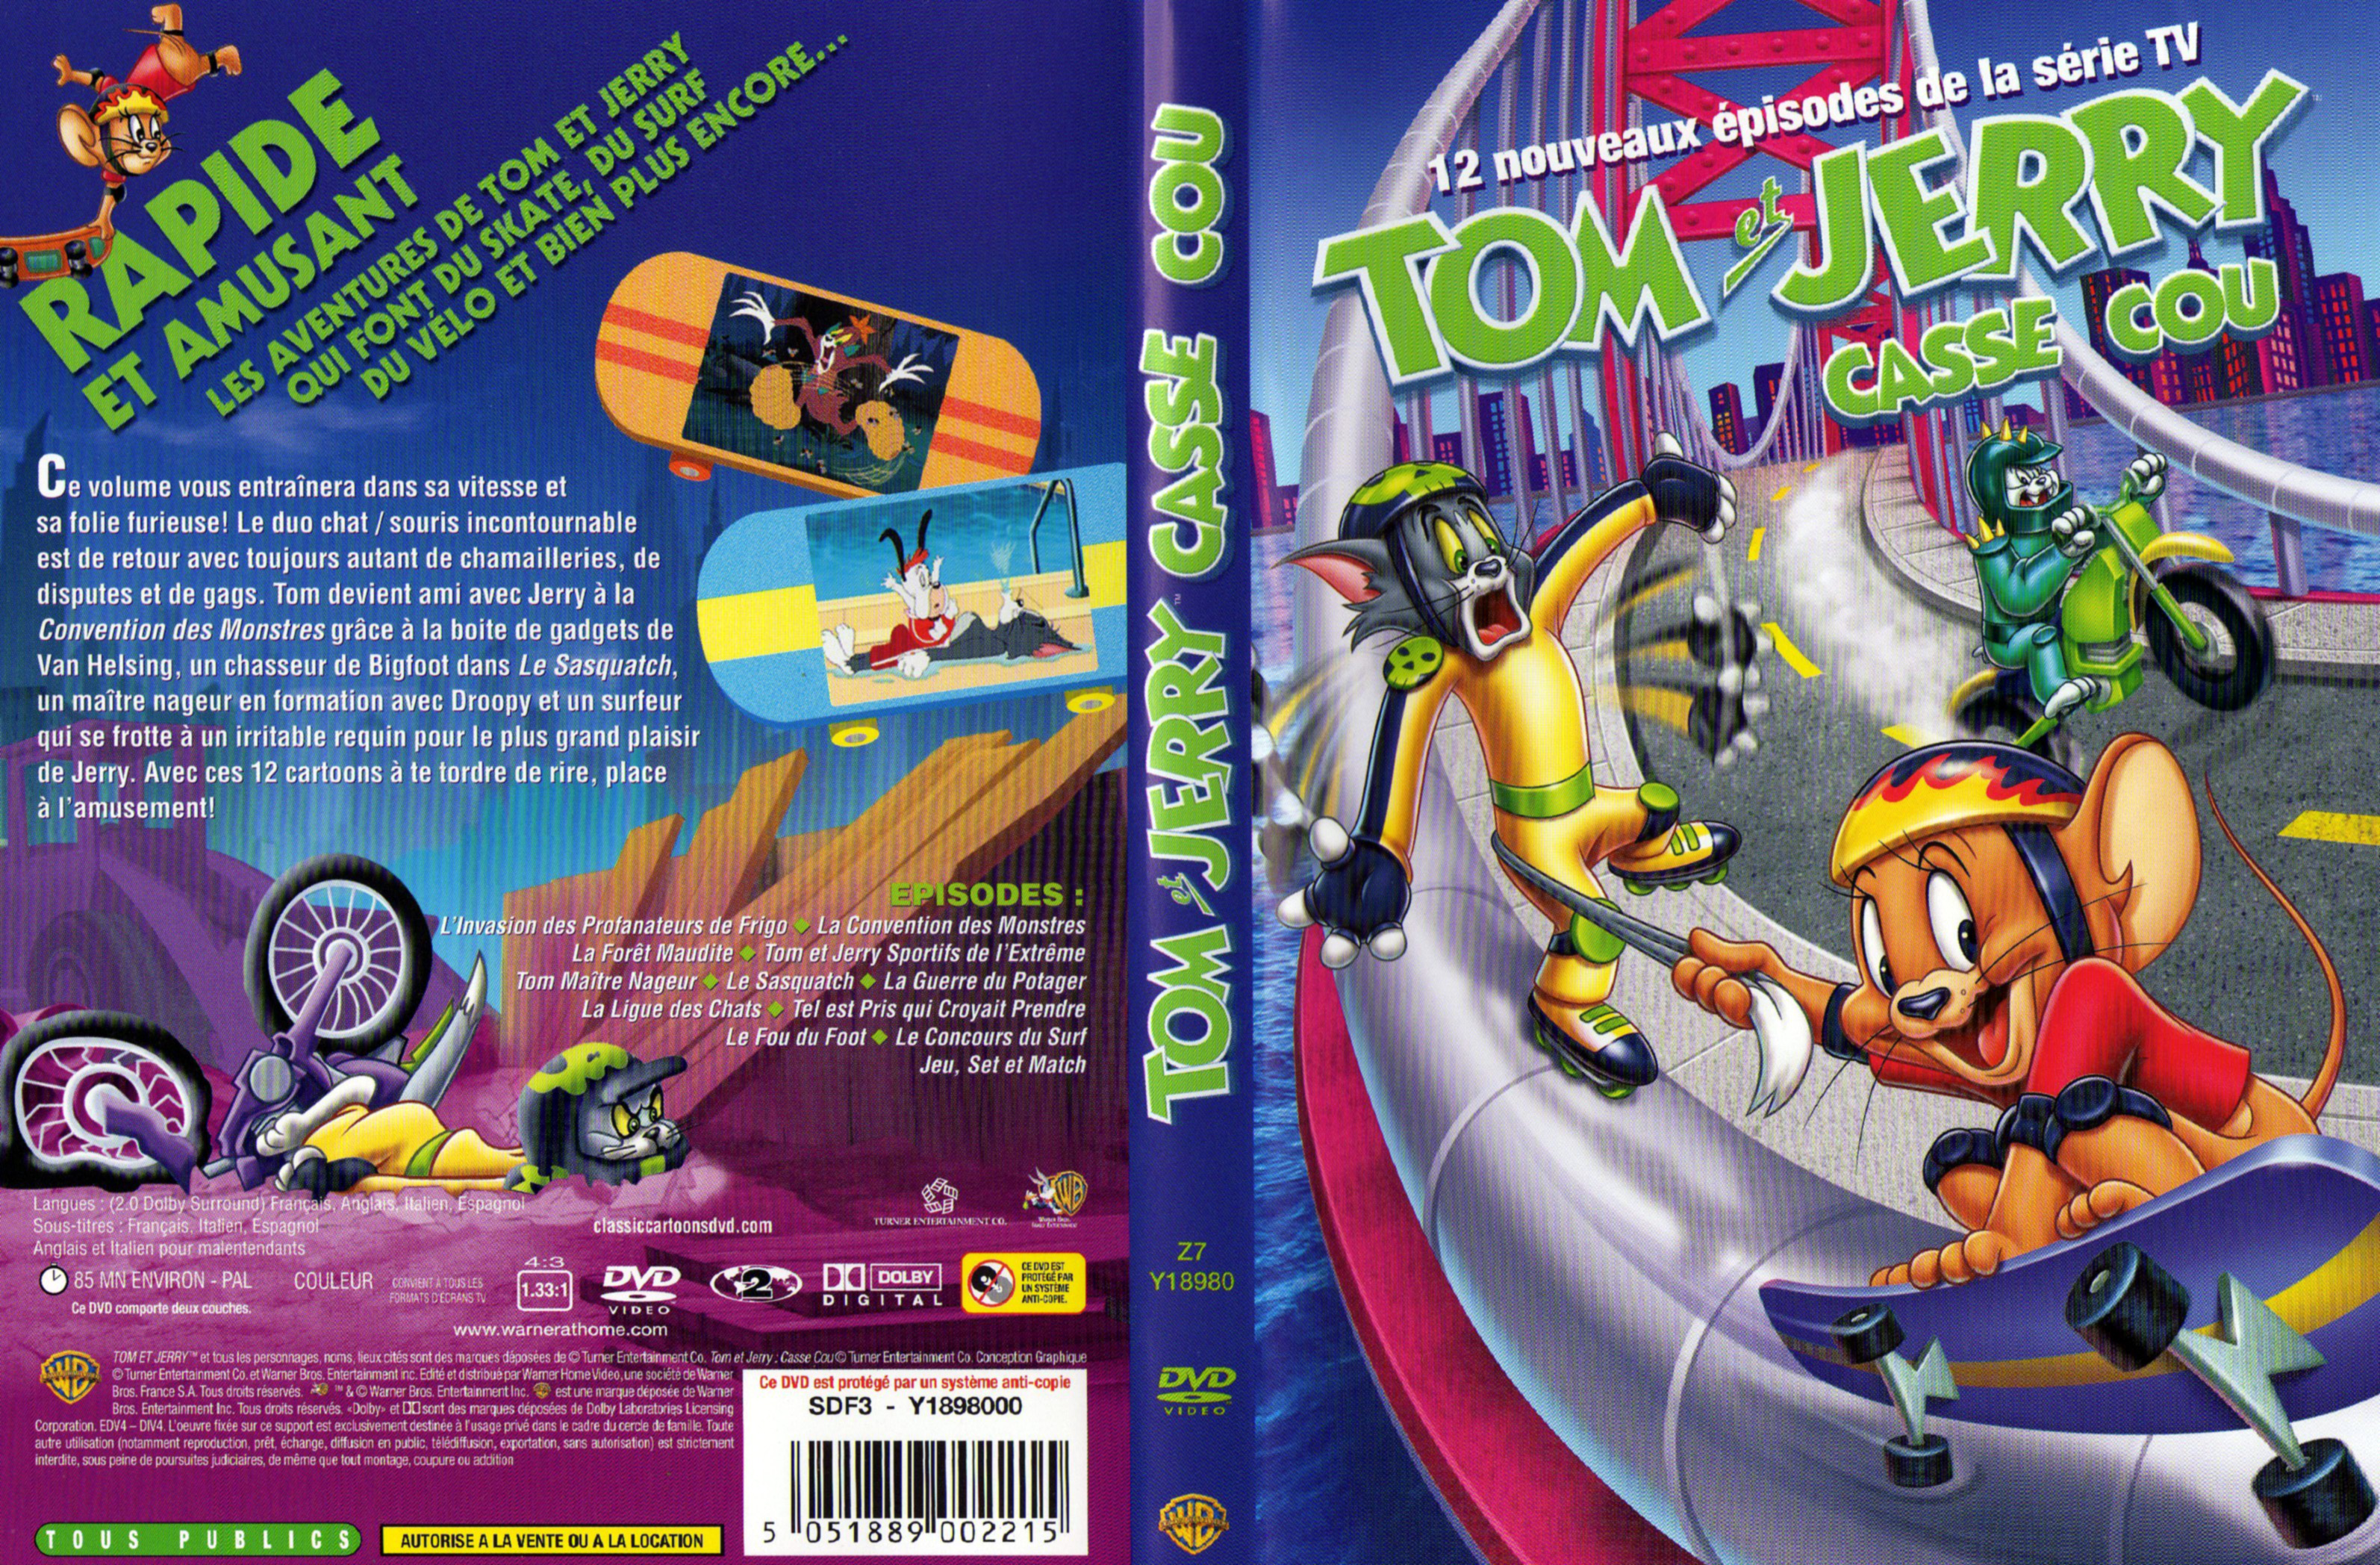 Jaquette DVD Tom et jerry - casse cou